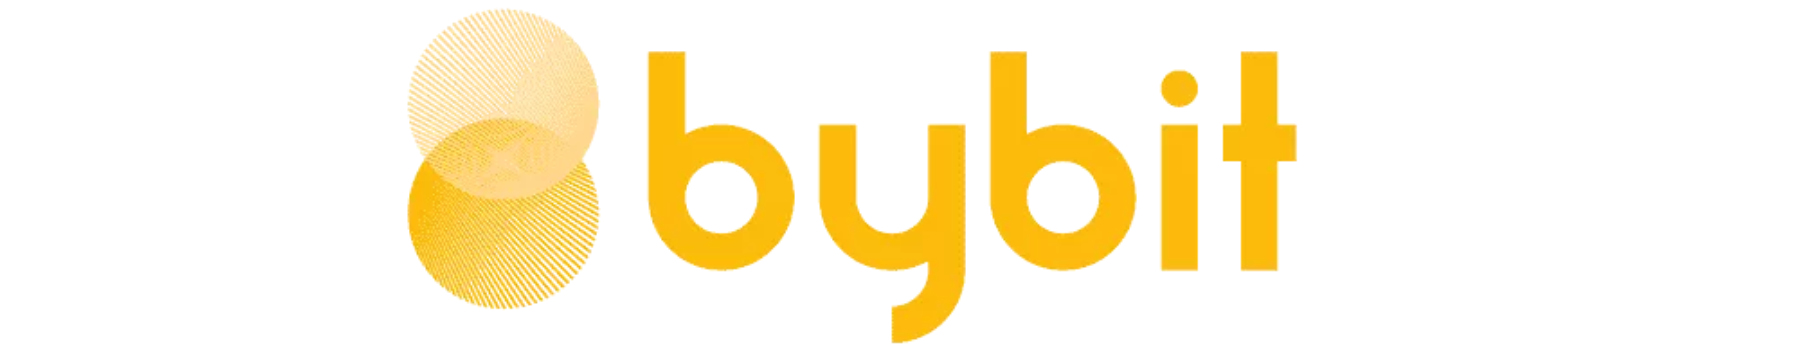 bybit logo Gelb auf weißen Hintergrund